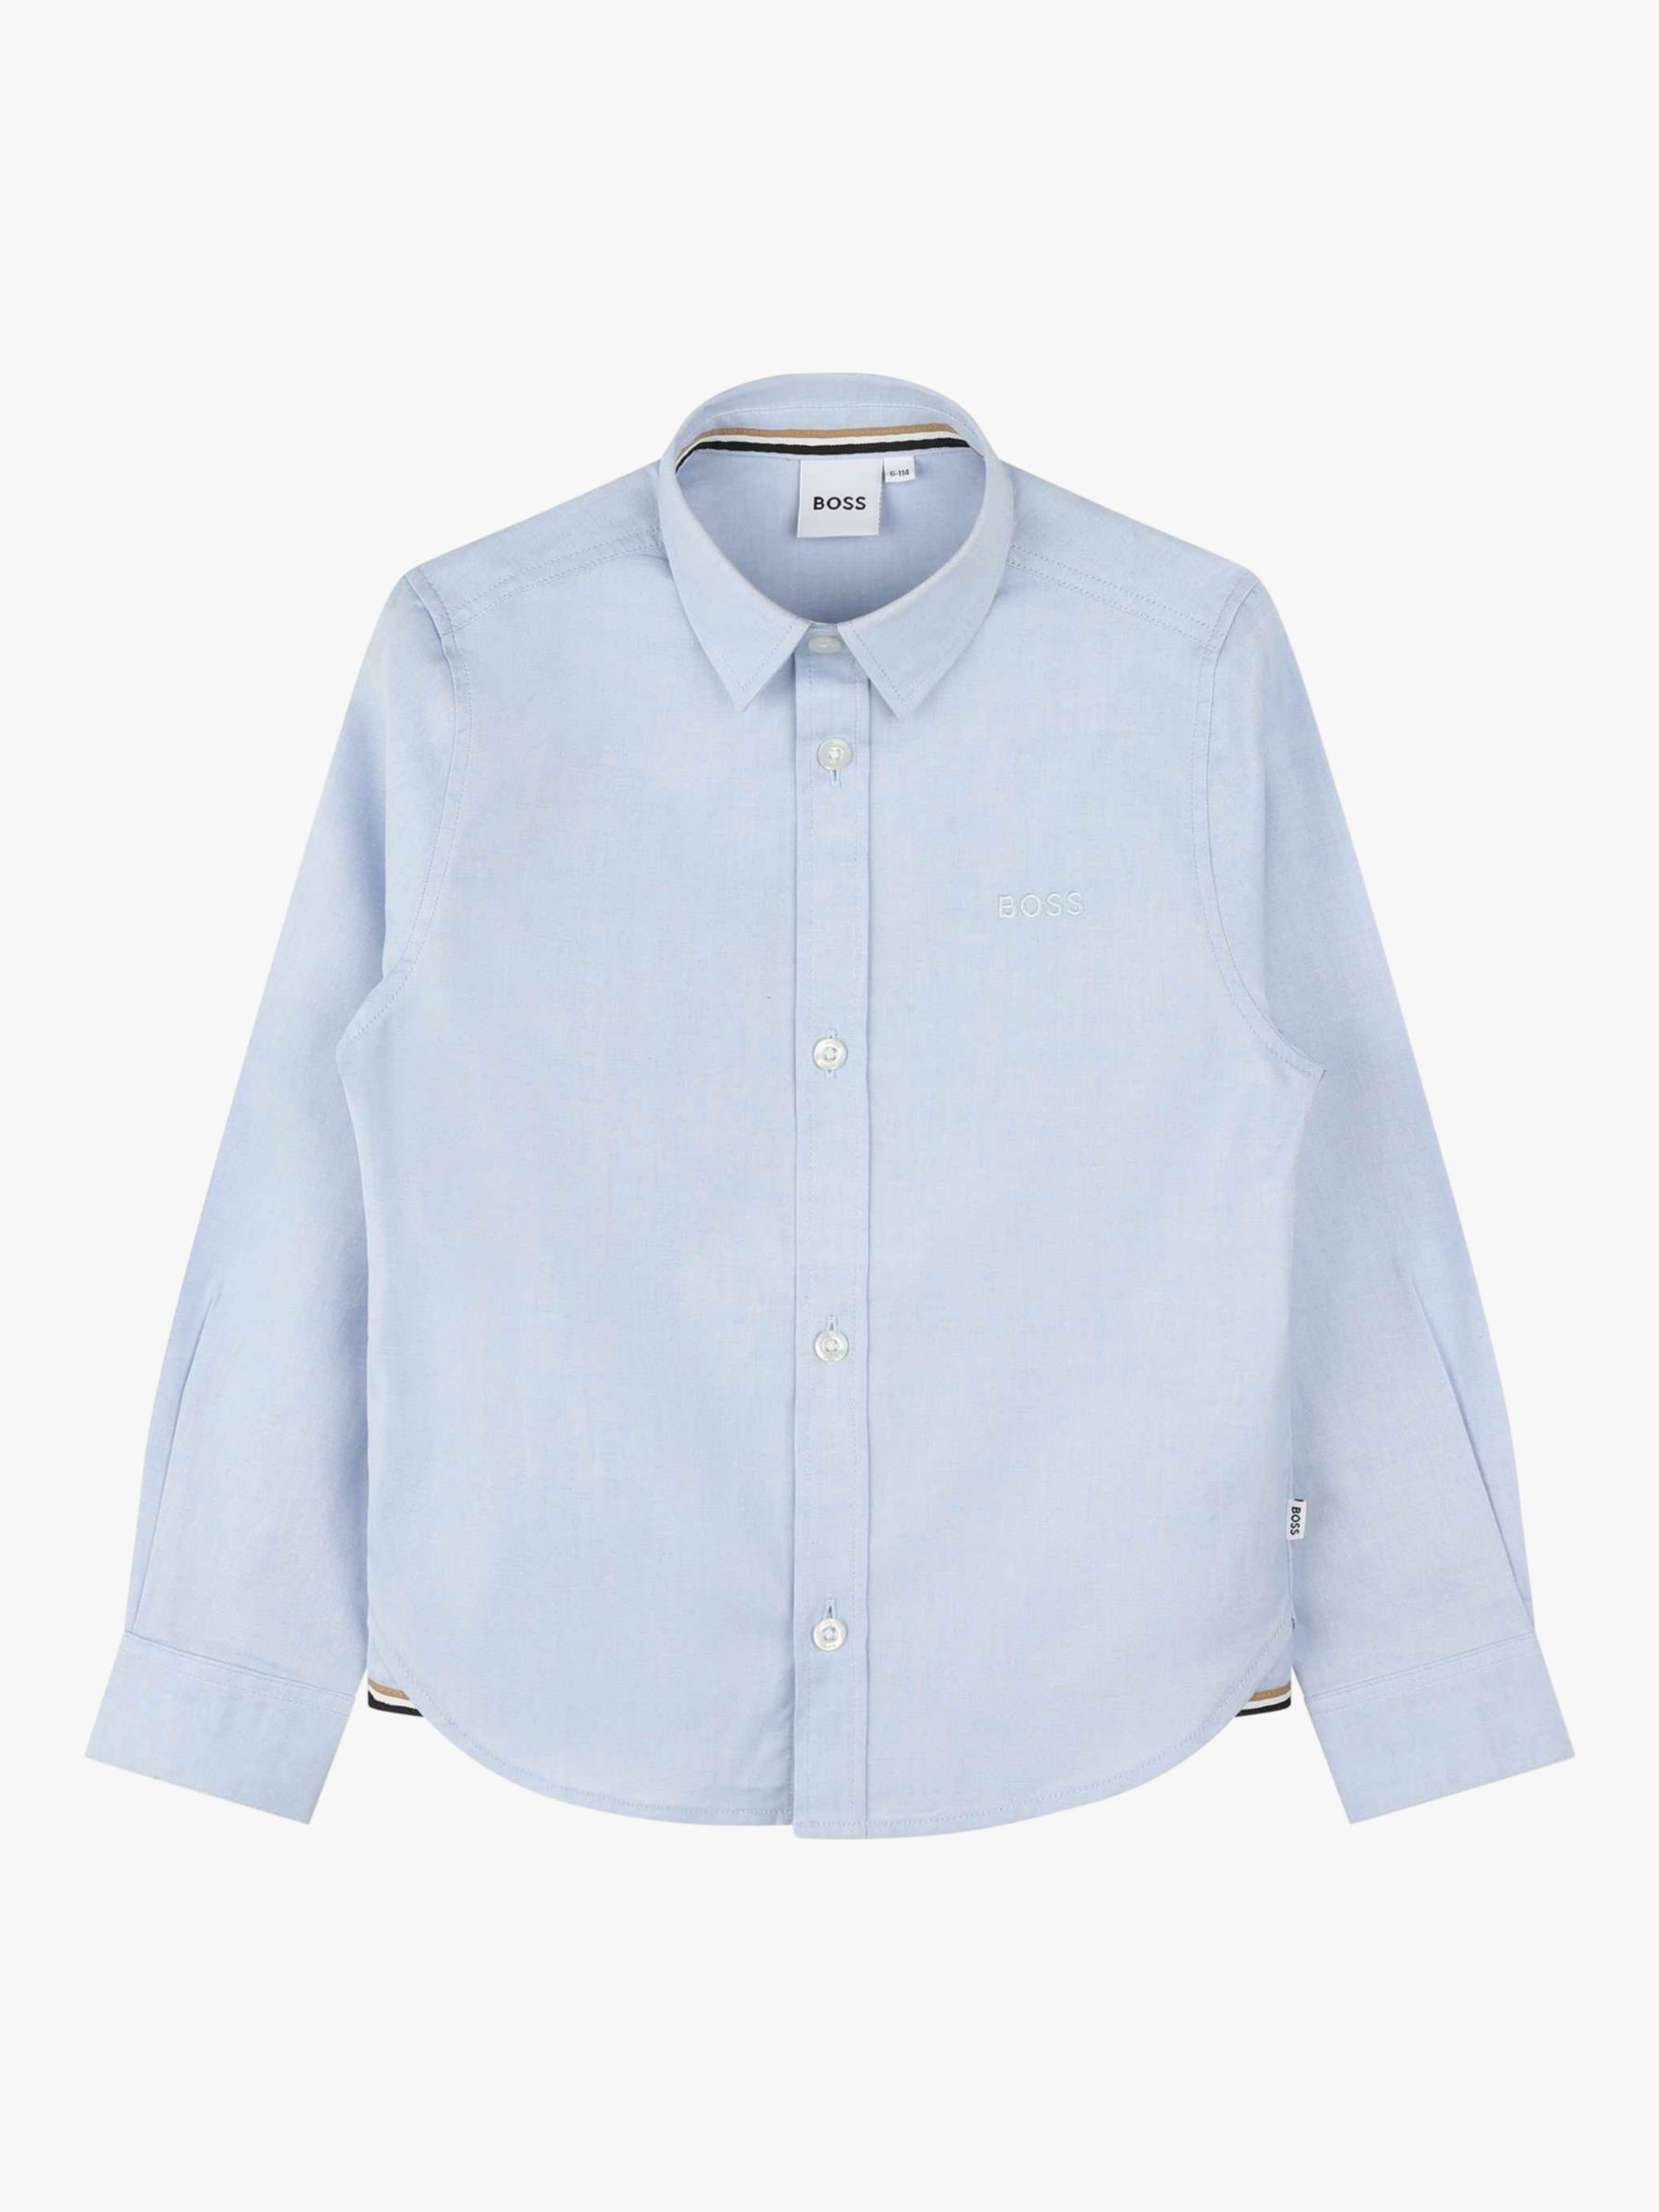 Детская оксфордская рубашка BOSS с длинным рукавом HUGO BOSS, светло-синий рубашка из ткани оксфорд с длинными рукавами xl бежевый